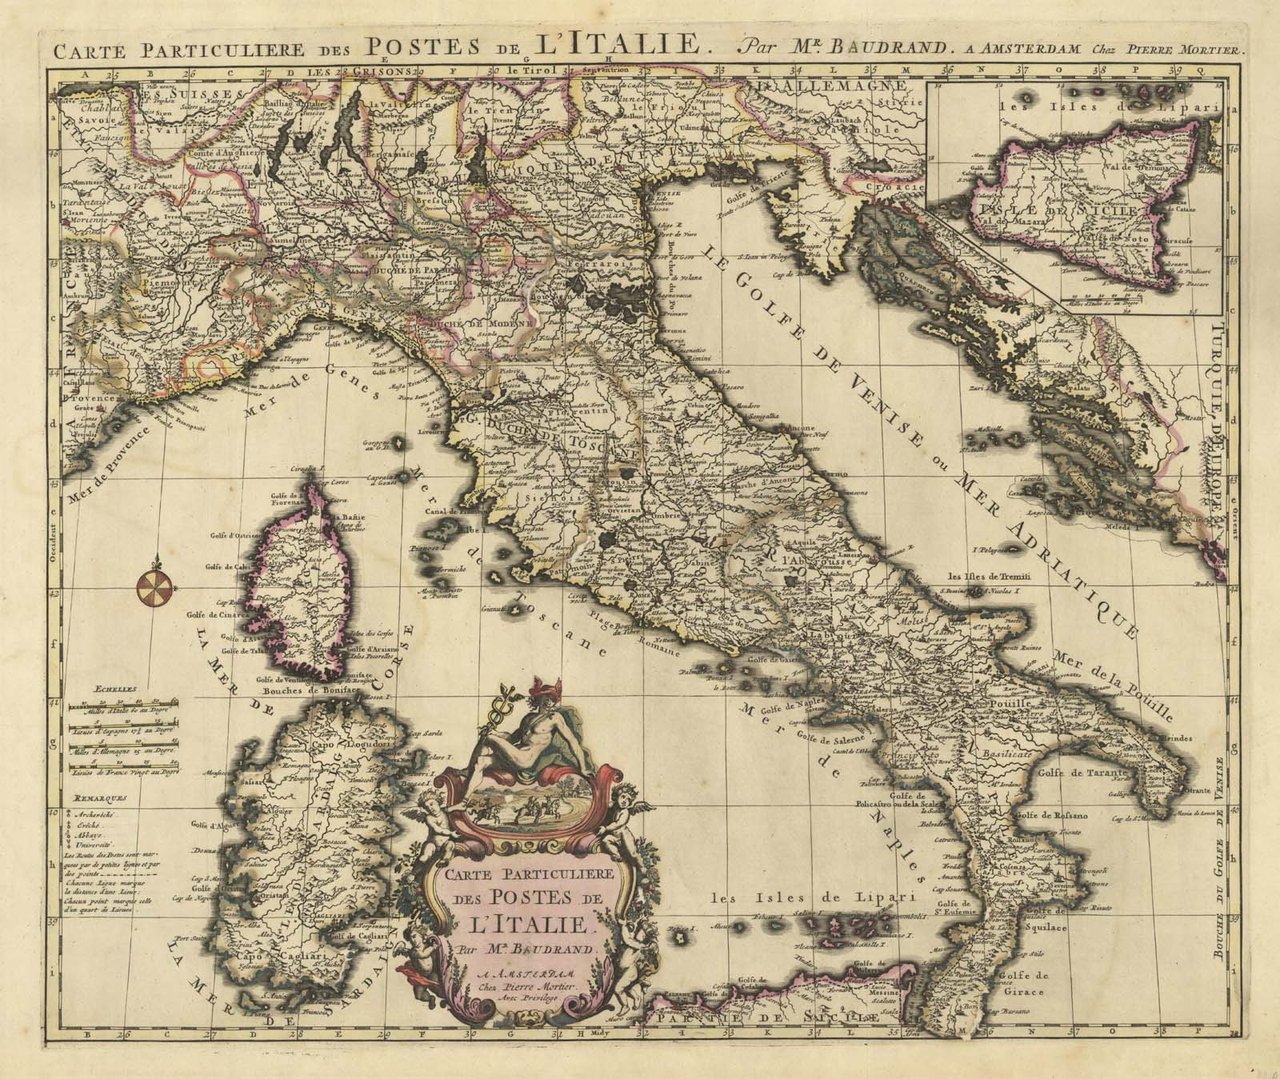 Carte Particuliere des Postes de l'Italie